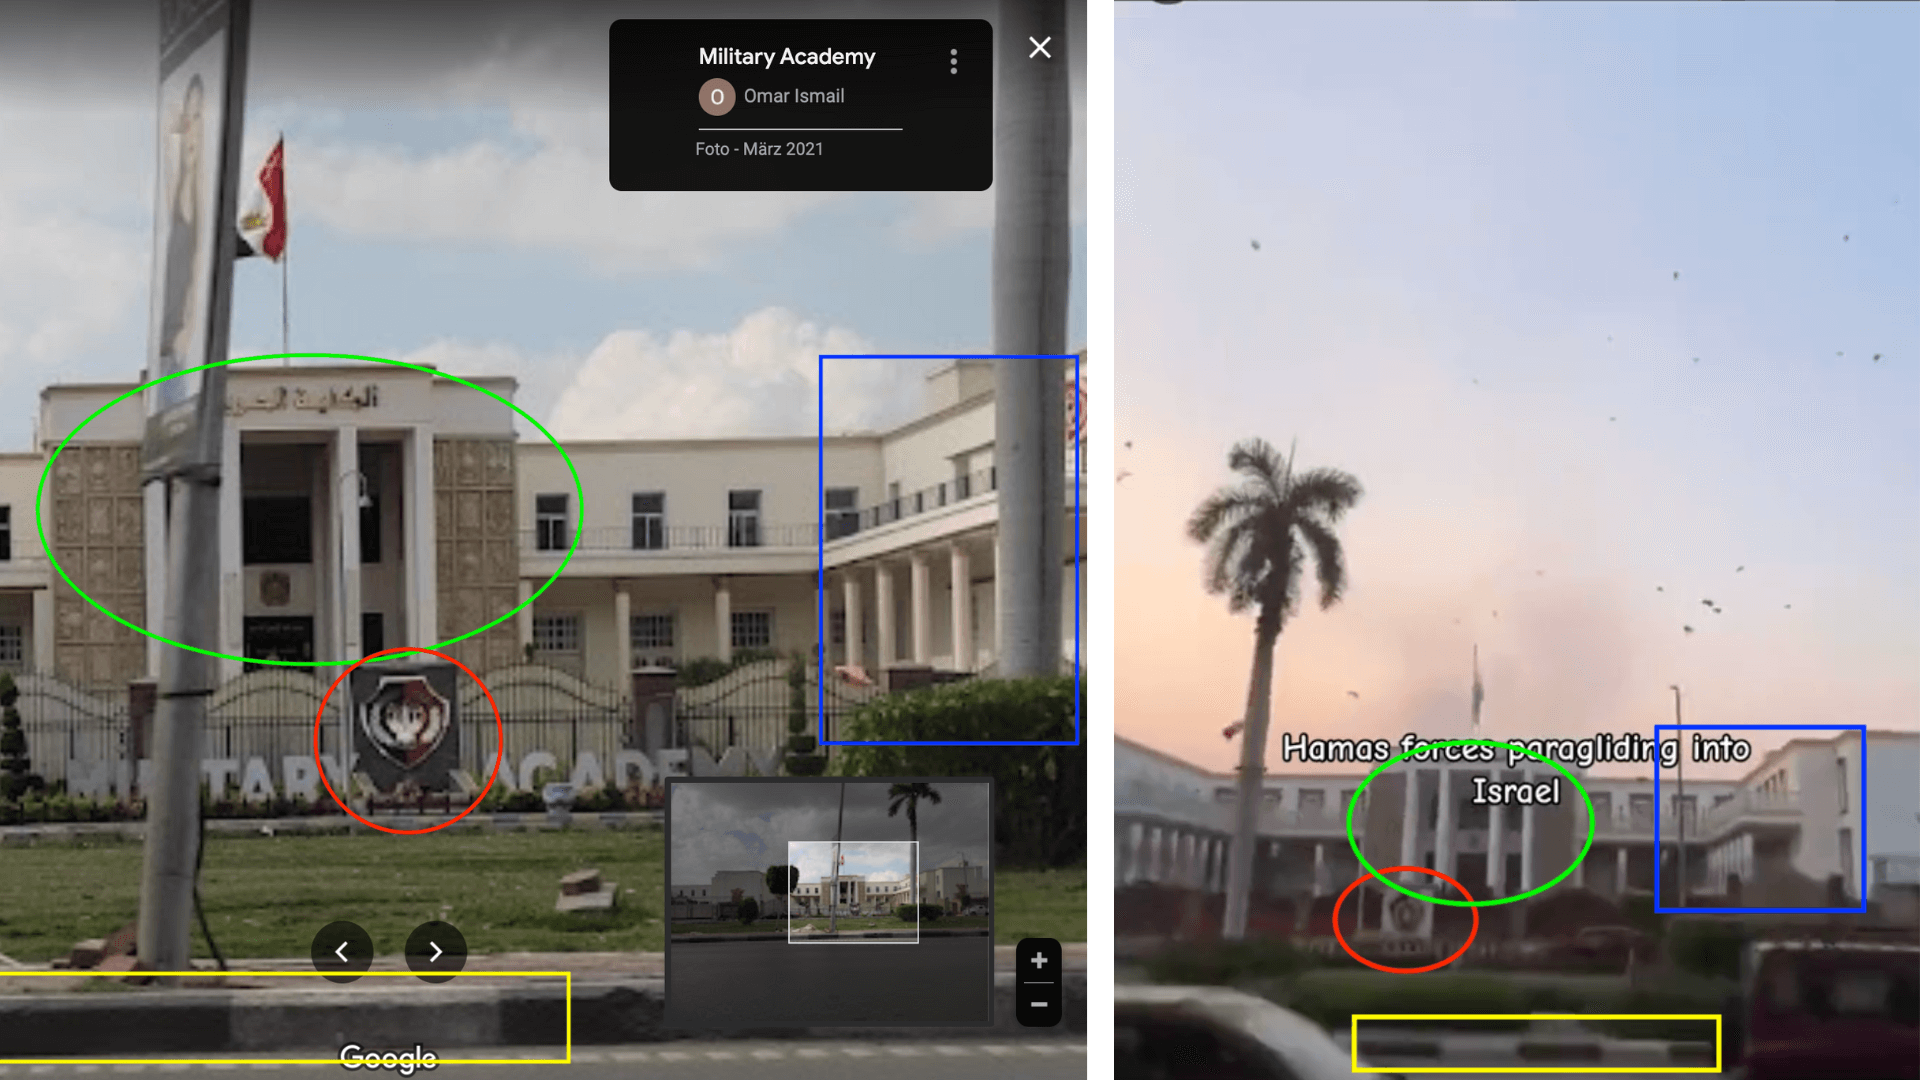 Aufnahme der Militärakademie in Kairo aus dem Jahr 2021 bei Google Maps (links) und der Ausschnitt aus dem Tiktok-Video (rechts). Der Vergleich zeigt: Es handelt sich um dasselbe Gebäude